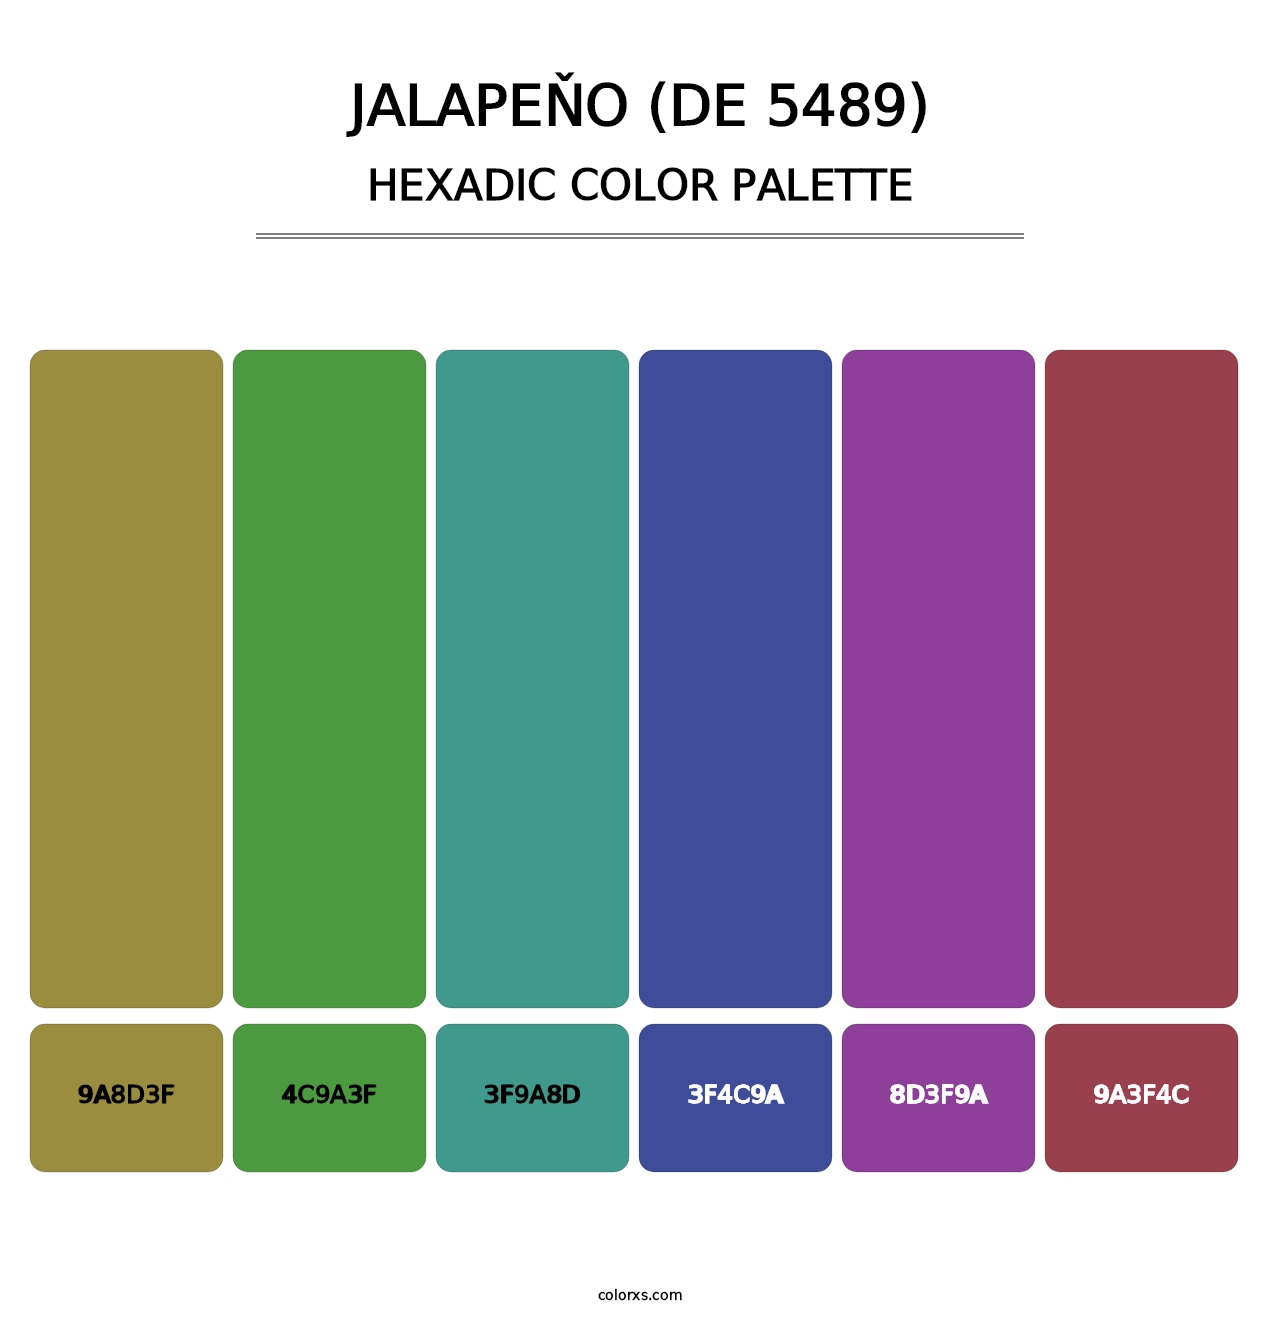 Jalapeňo (DE 5489) - Hexadic Color Palette